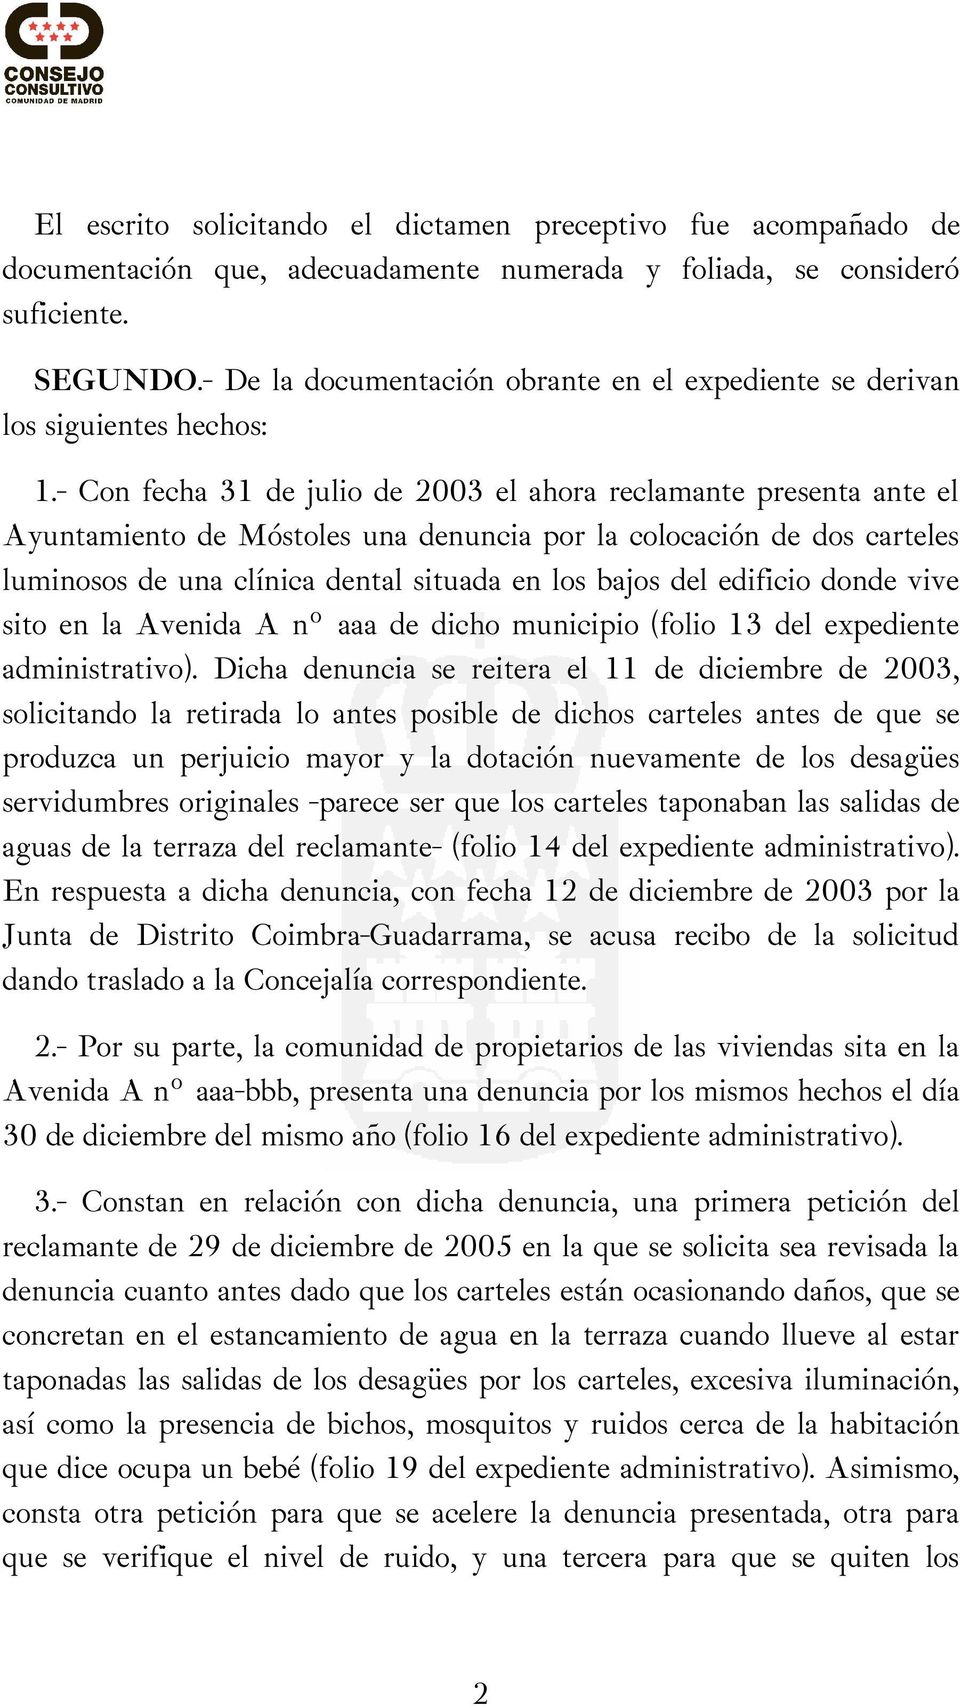 - Con fecha 31 de julio de 2003 el ahora reclamante presenta ante el Ayuntamiento de Móstoles una denuncia por la colocación de dos carteles luminosos de una clínica dental situada en los bajos del